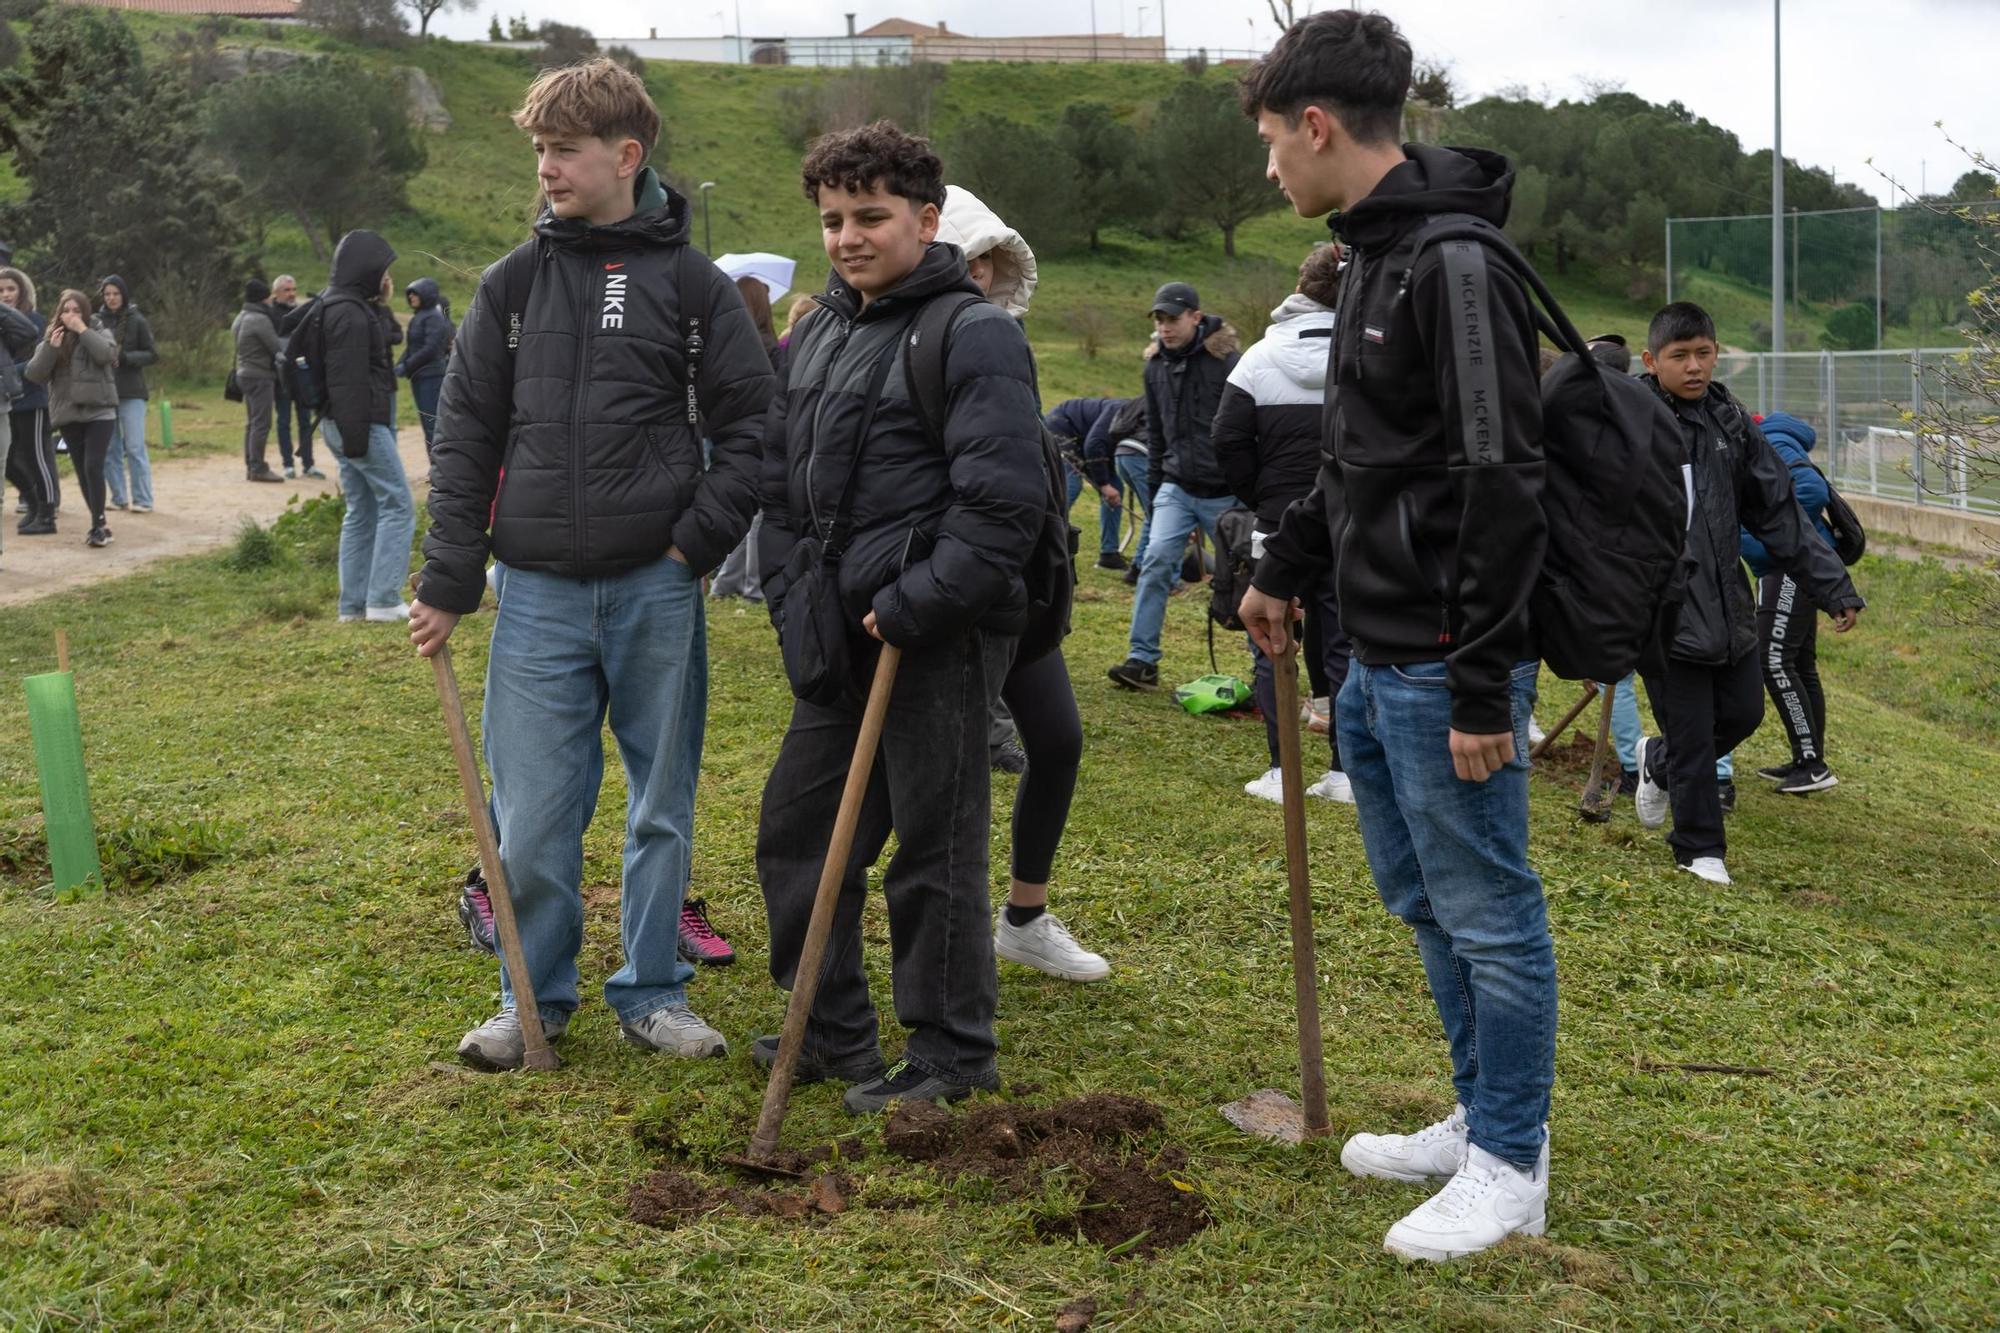 Plantación de árboles por alumnos del IES La Vaguada en Valorio